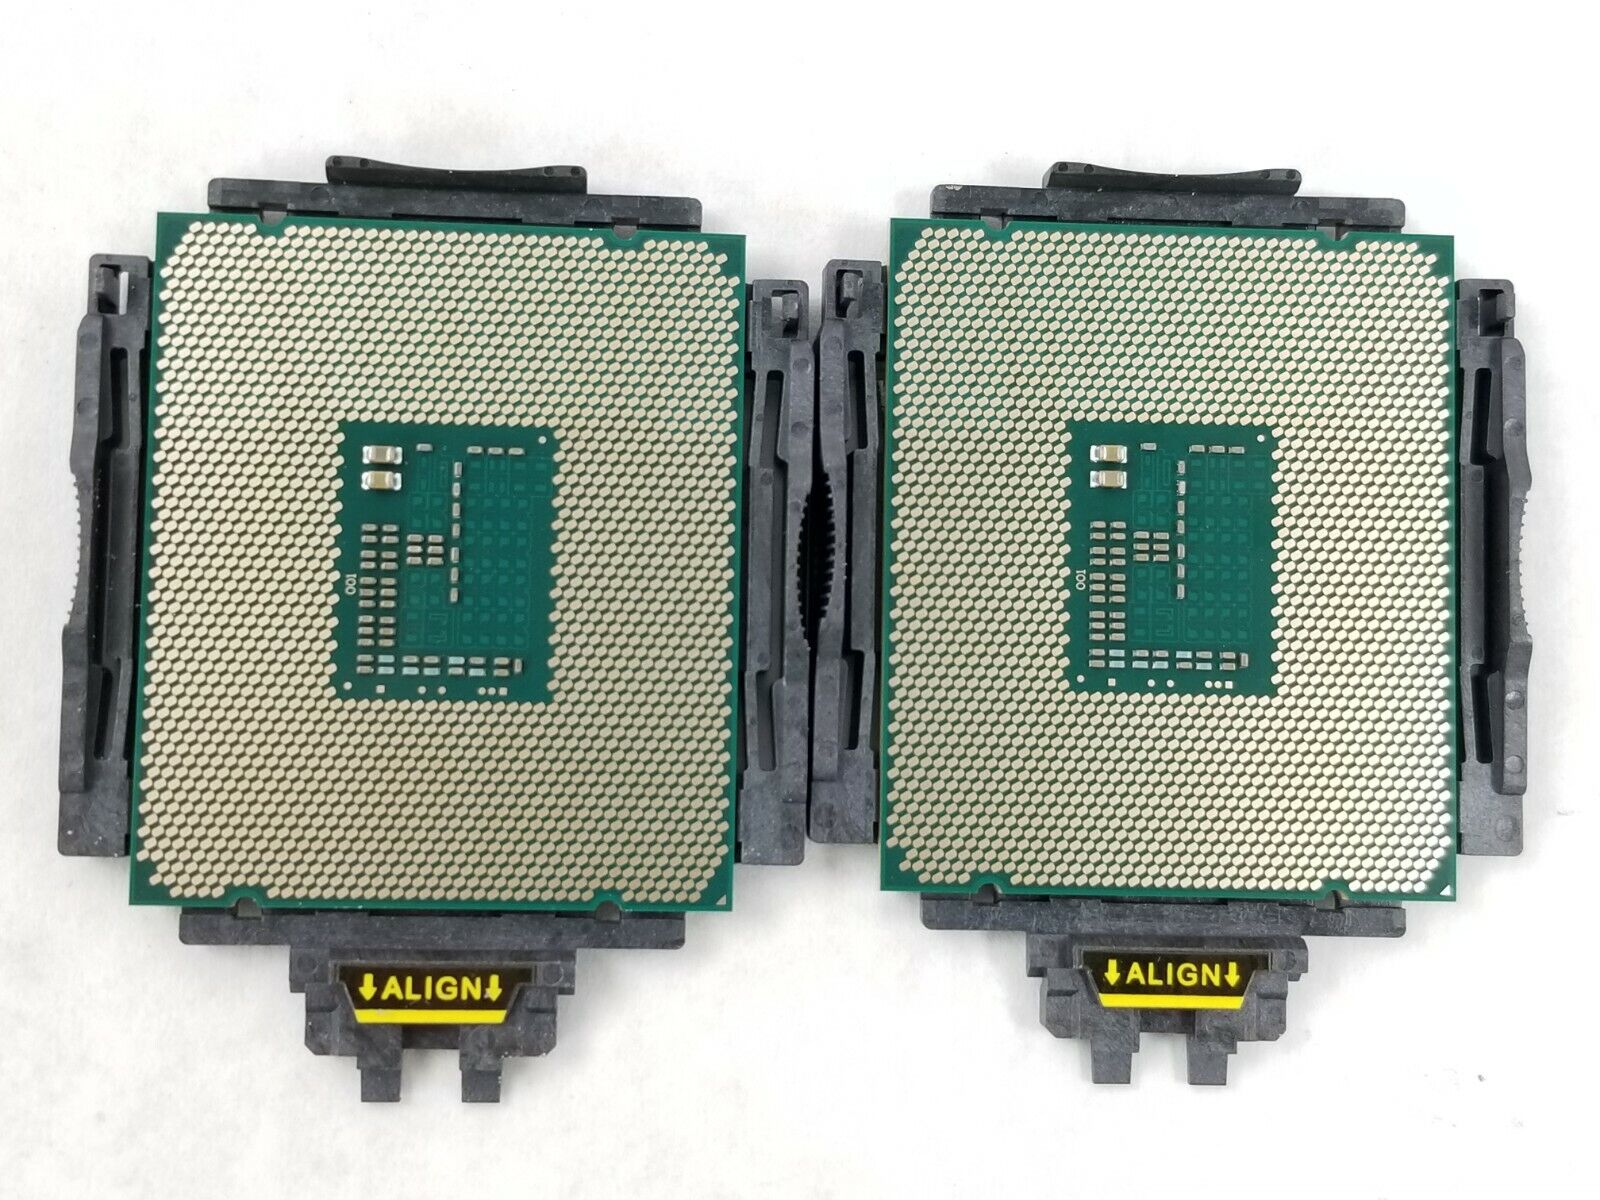 Matching Pair Intel Xeon E5-2630 V3 CPU 8-Core 2.4GHz SR206 20MB 85W LGA 2011-3